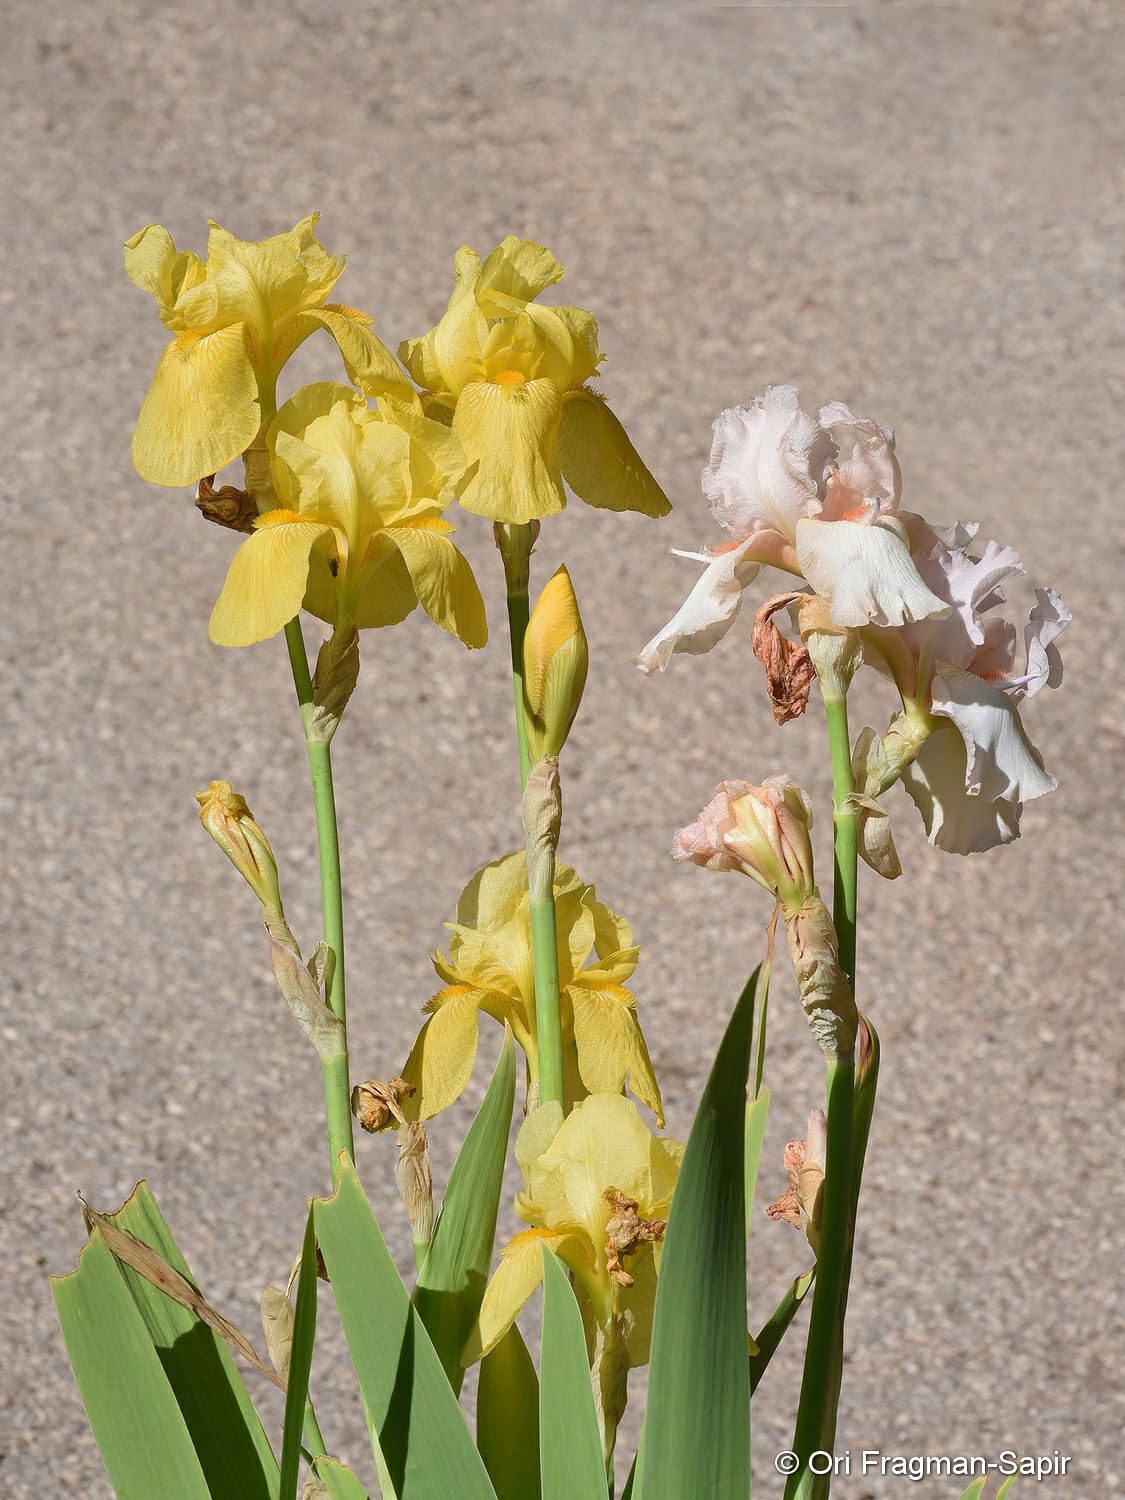 Iris × germanica - German Iris, איריס גרמני, איריס גרמני